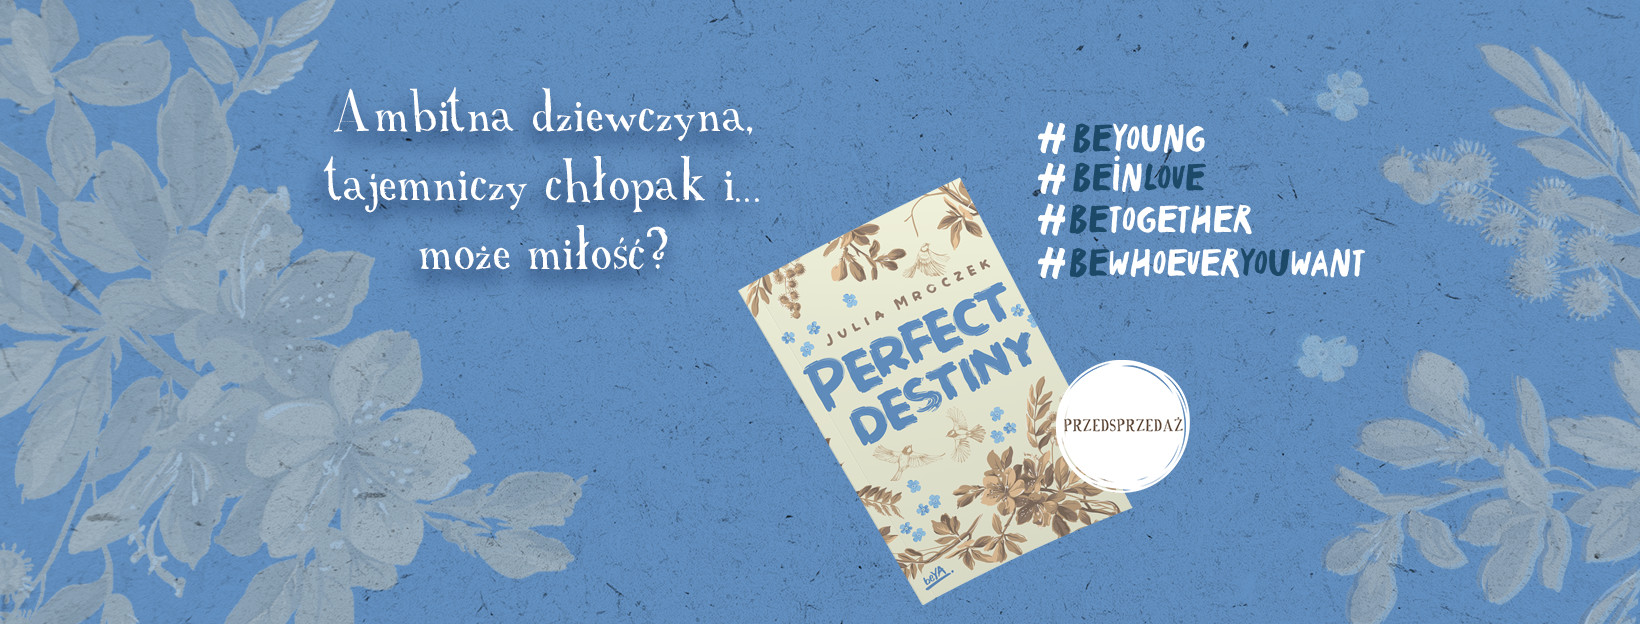 "Perfect destiny" Julii Mroczek - premiera już 11 paćdziernika!